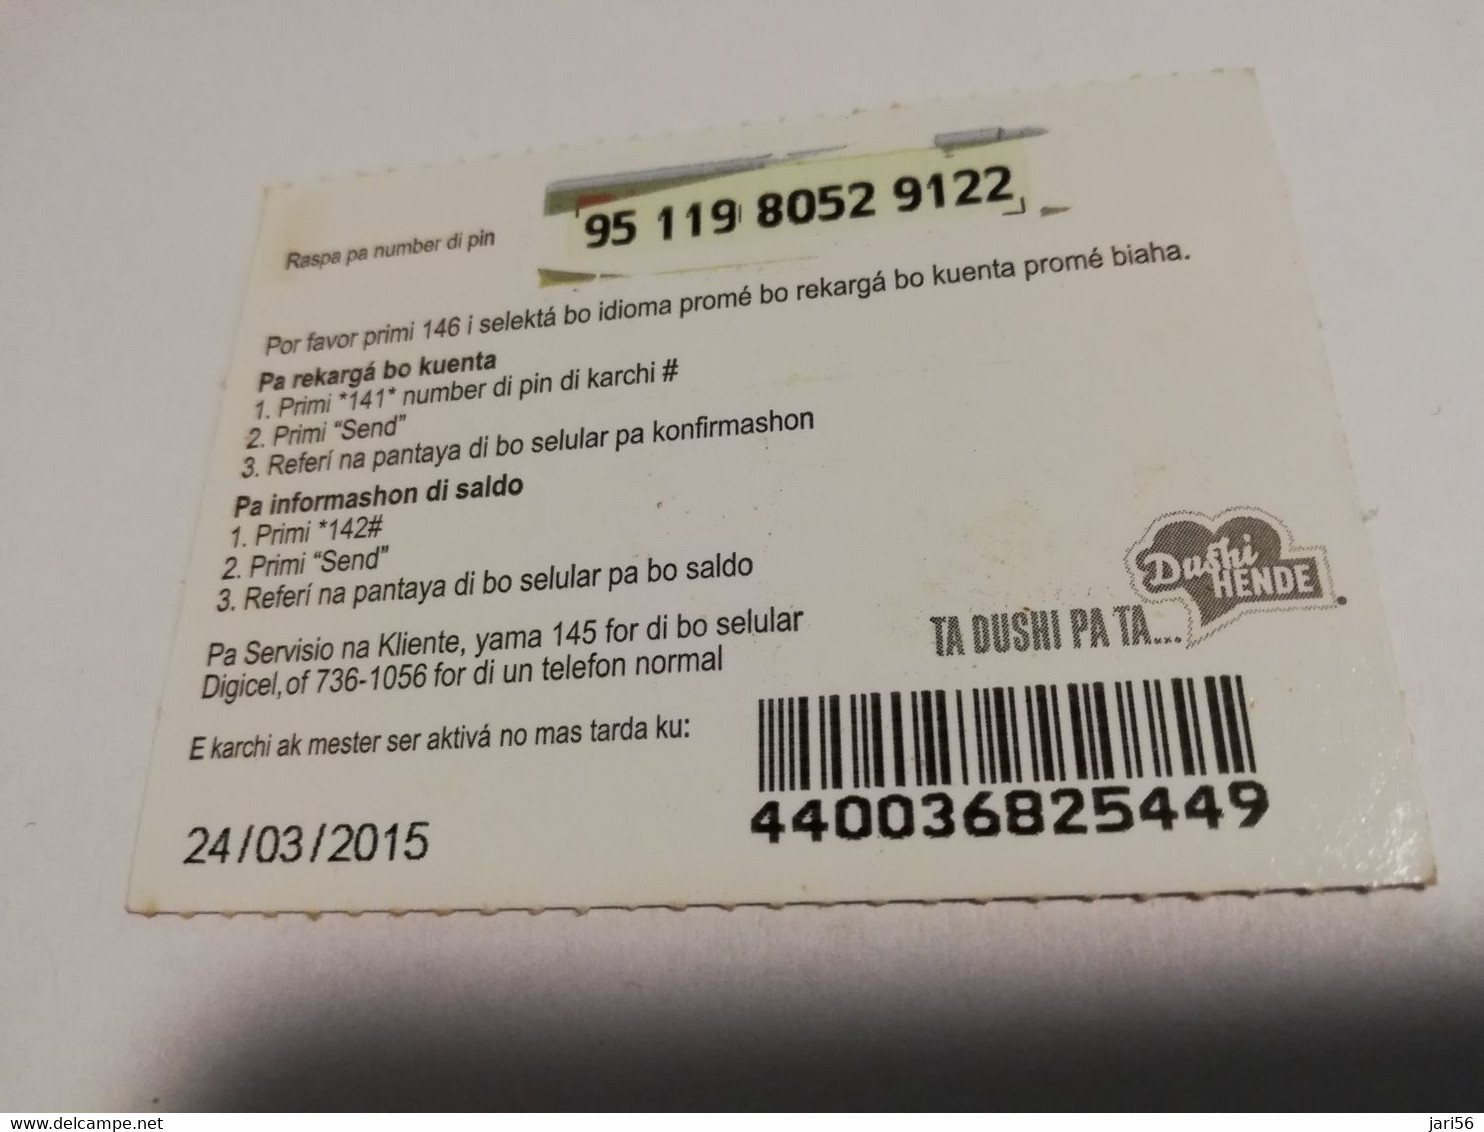 CURACAO NAF 5,- DIGICEL FLEX CARD  FLOATING MARKET CURACAO   24/03/2015   ** 4262** - Antillas (Nerlandesas)